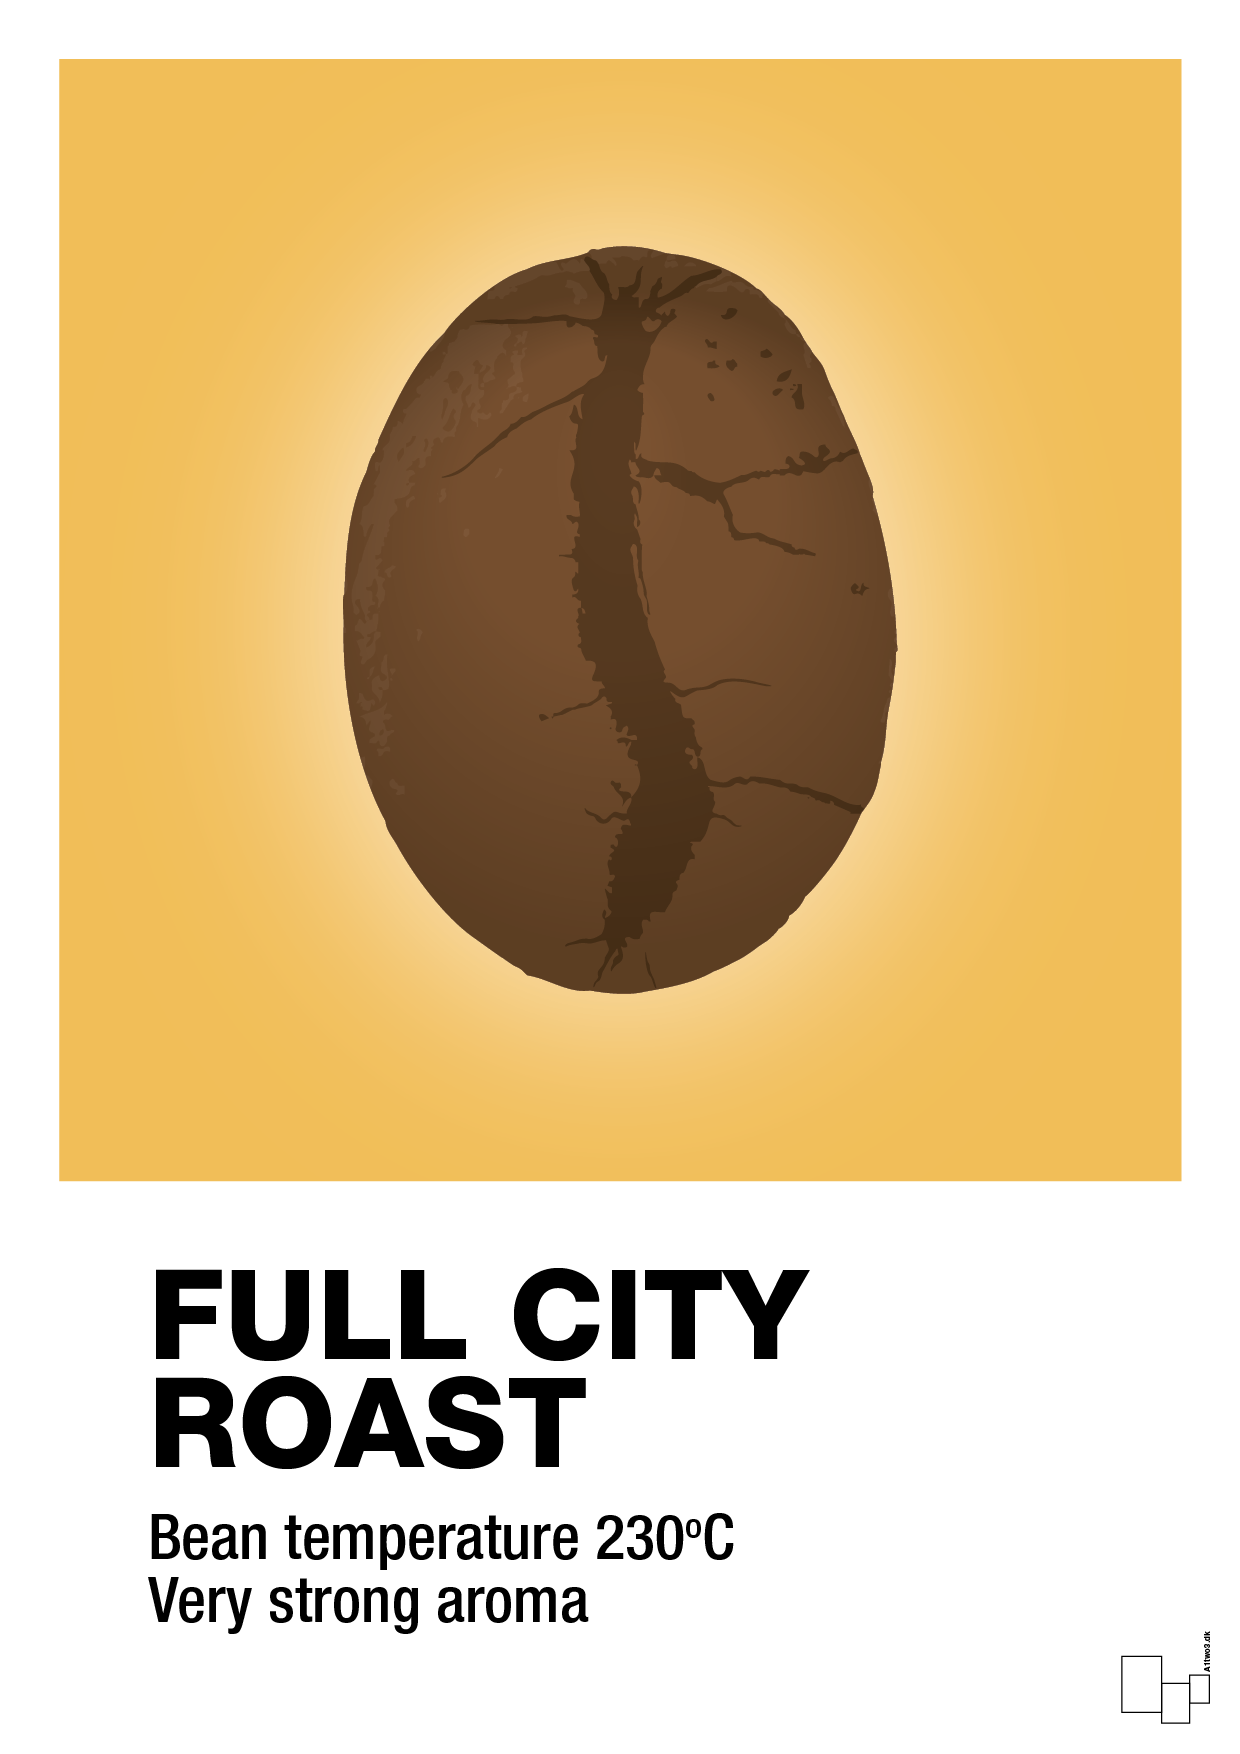 full city roast - Plakat med Mad & Drikke i Honeycomb